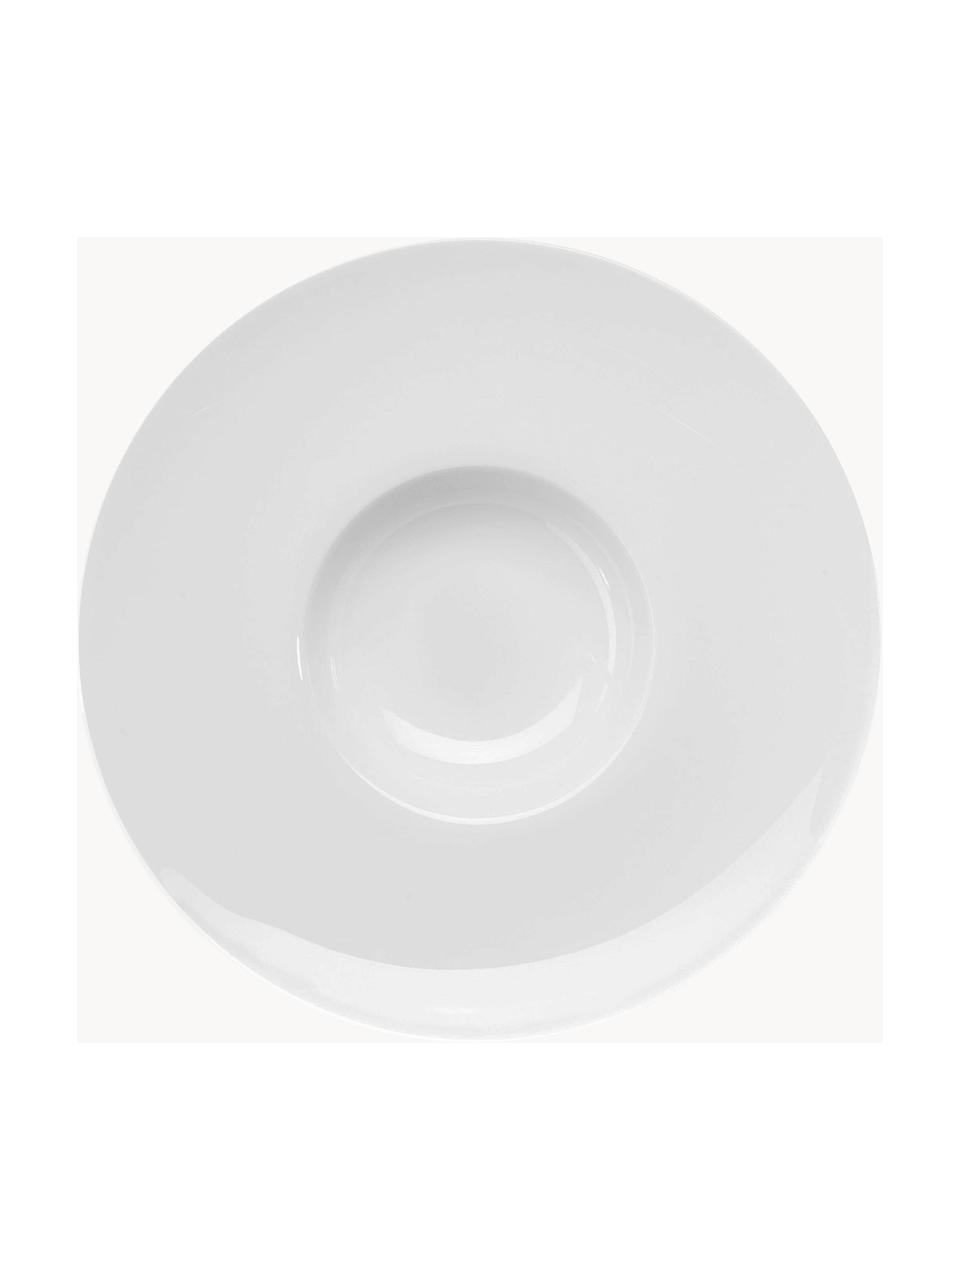 Grandes assiettes à pâtes en porcelaine Fine Bone China à table, 6 pièces, Porcelaine Fine Bone China
Fine Bone China est une porcelaine tendre, qui se distingue particulièrement par sa brillance et sa translucidité, Blanc, Ø 29 cm, haut. 5 cm